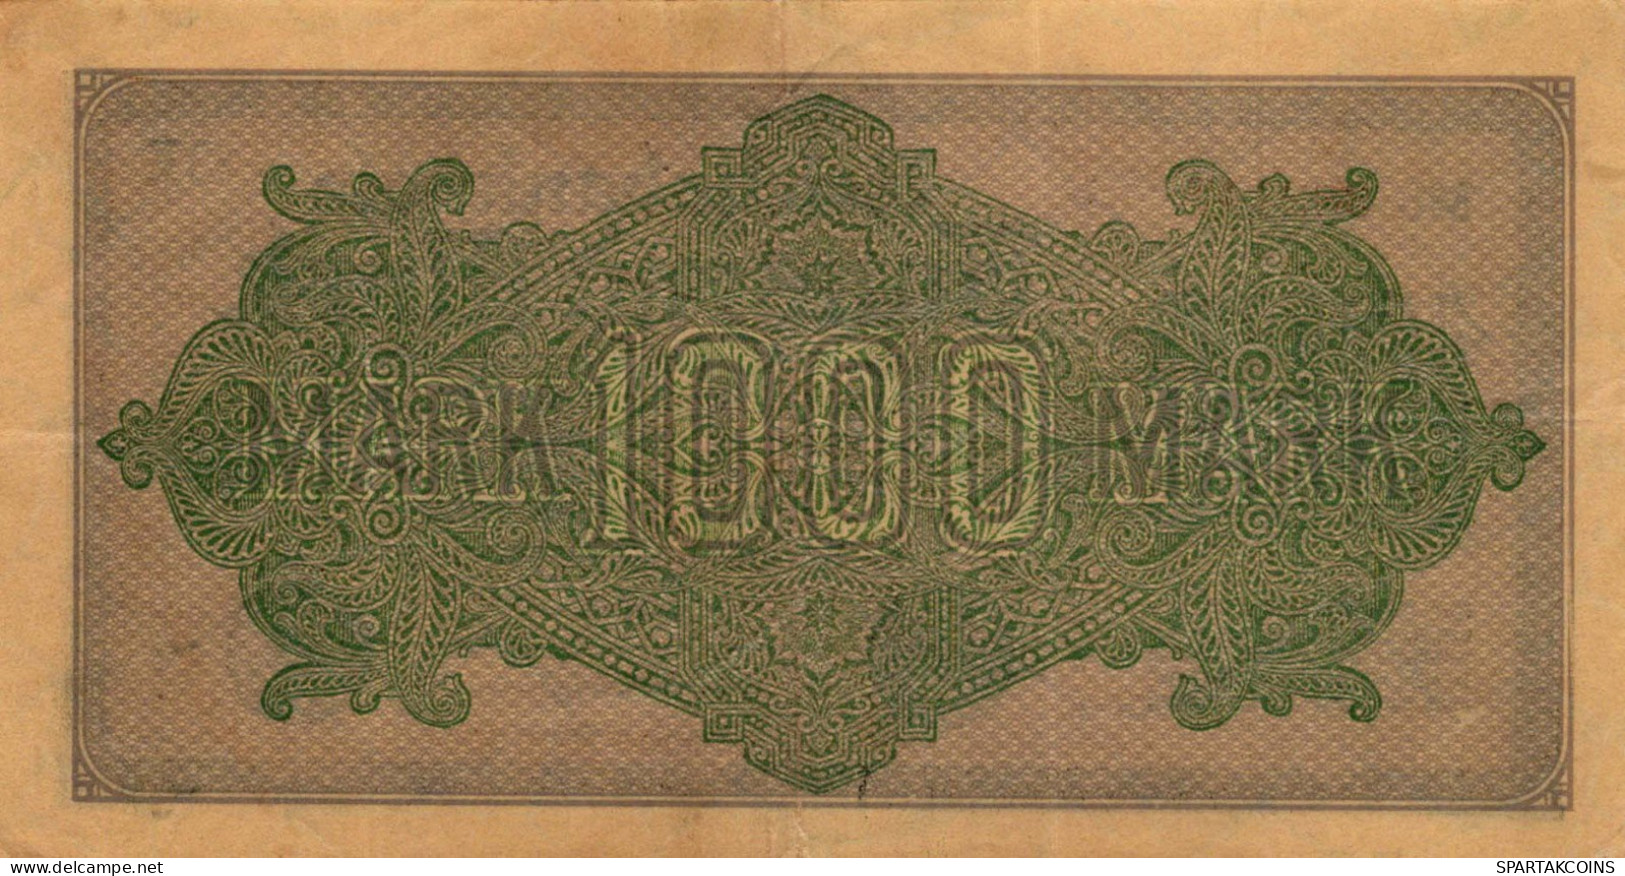 1000 MARK 1922 Stadt BERLIN DEUTSCHLAND Papiergeld Banknote #PL463 - [11] Local Banknote Issues